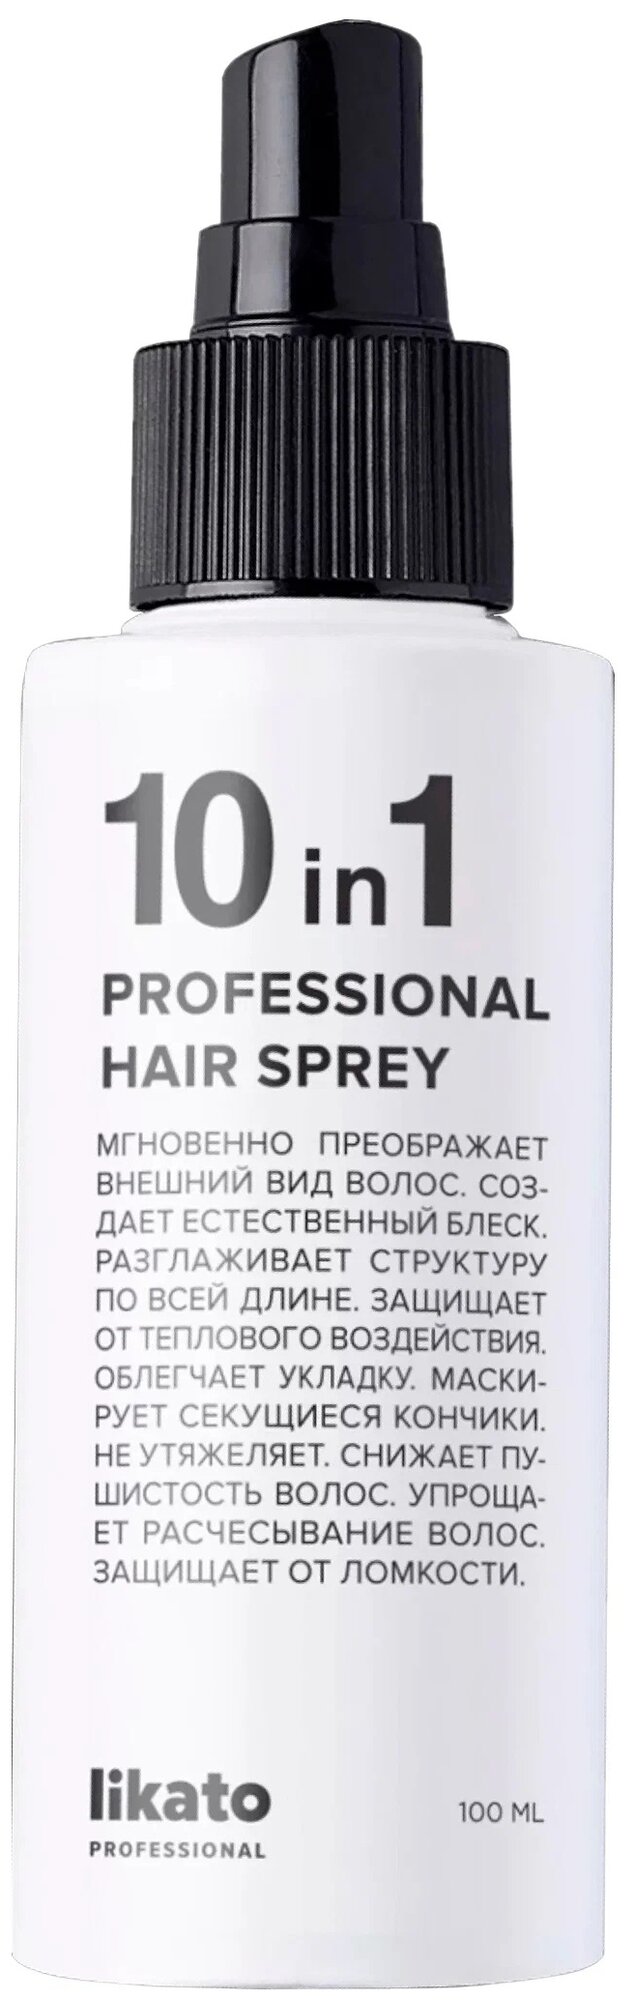 Likato Professional Спрей для мгновенного восстановления волос 10 в 1